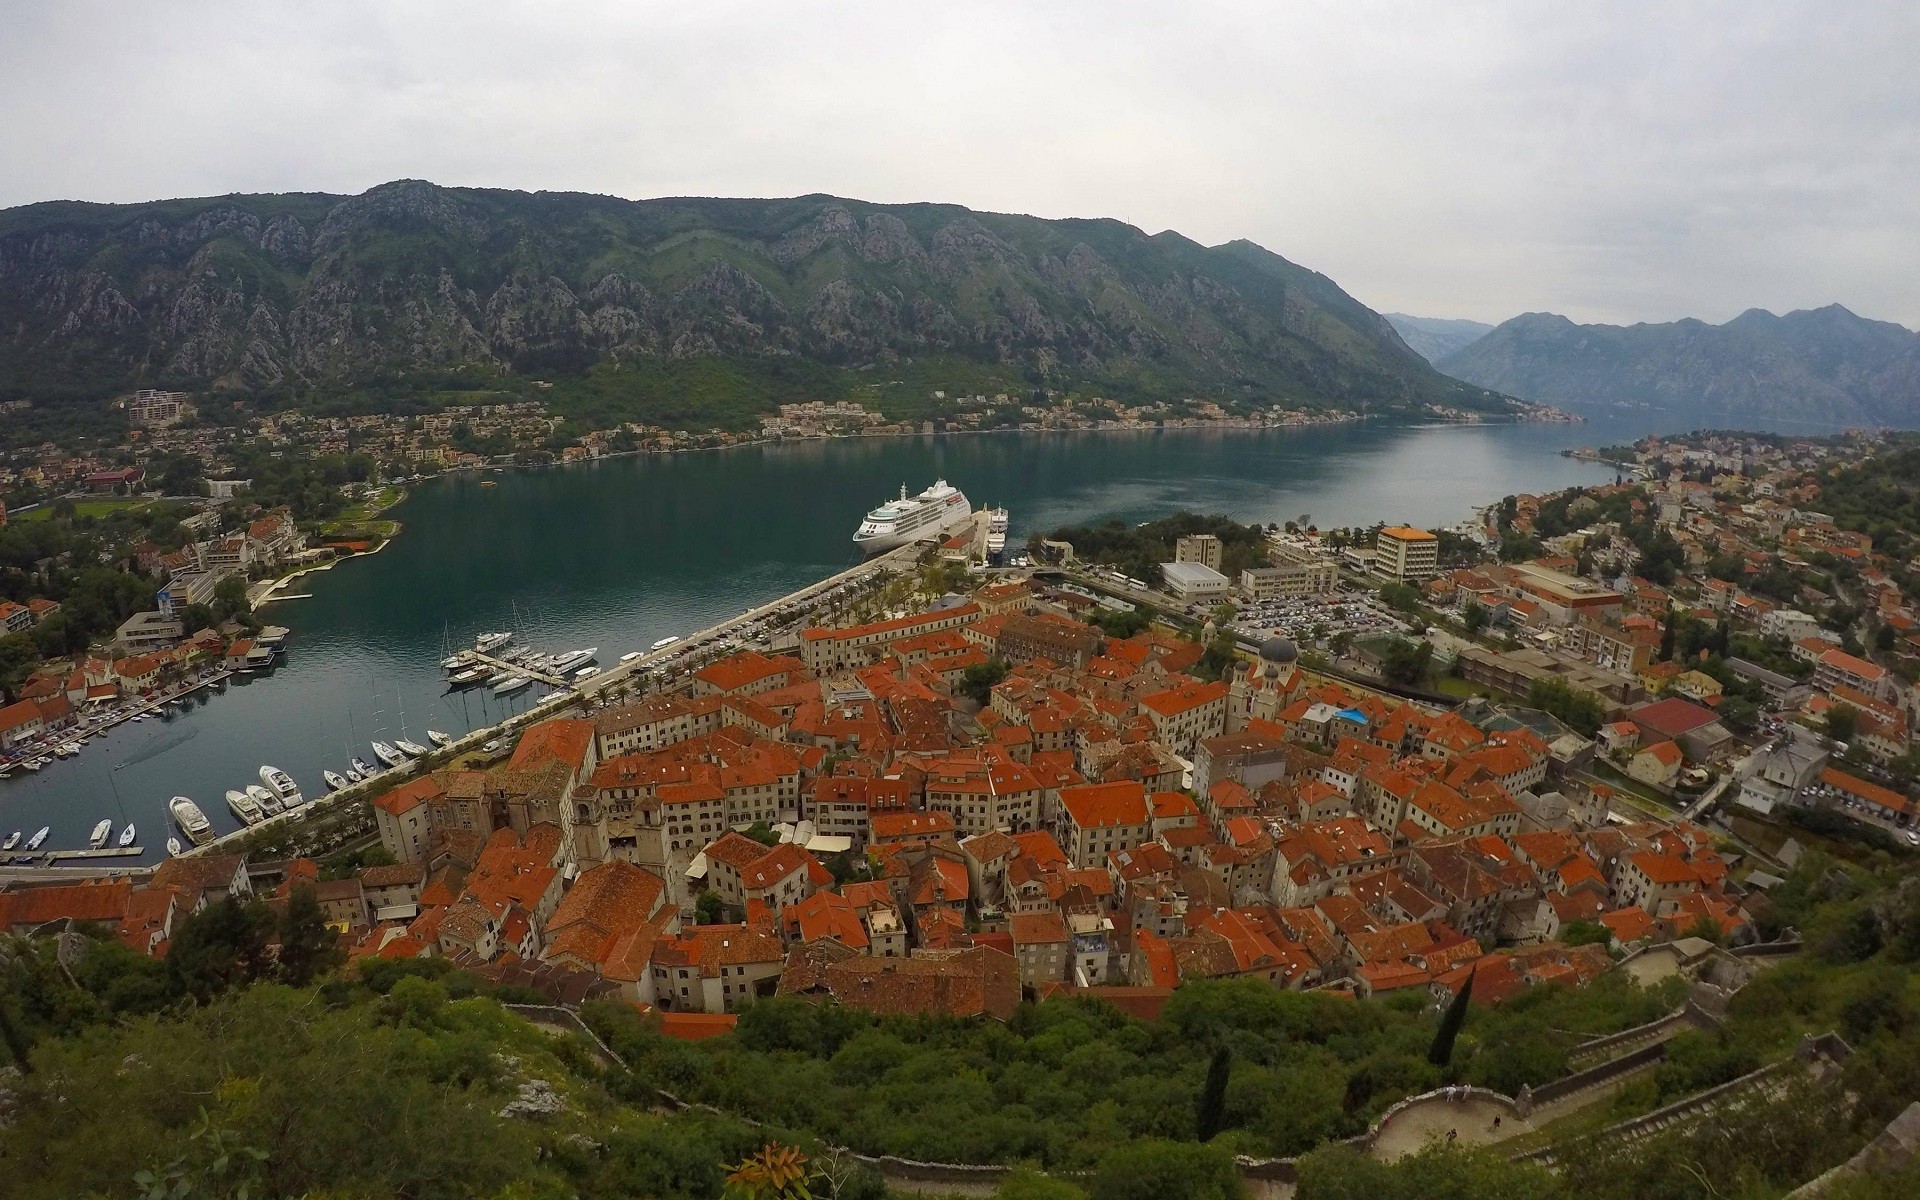 Kotor (town), Montenegro, City, Sea, River, Cliff, Ship, Cruise ship, Dock Wallpaper